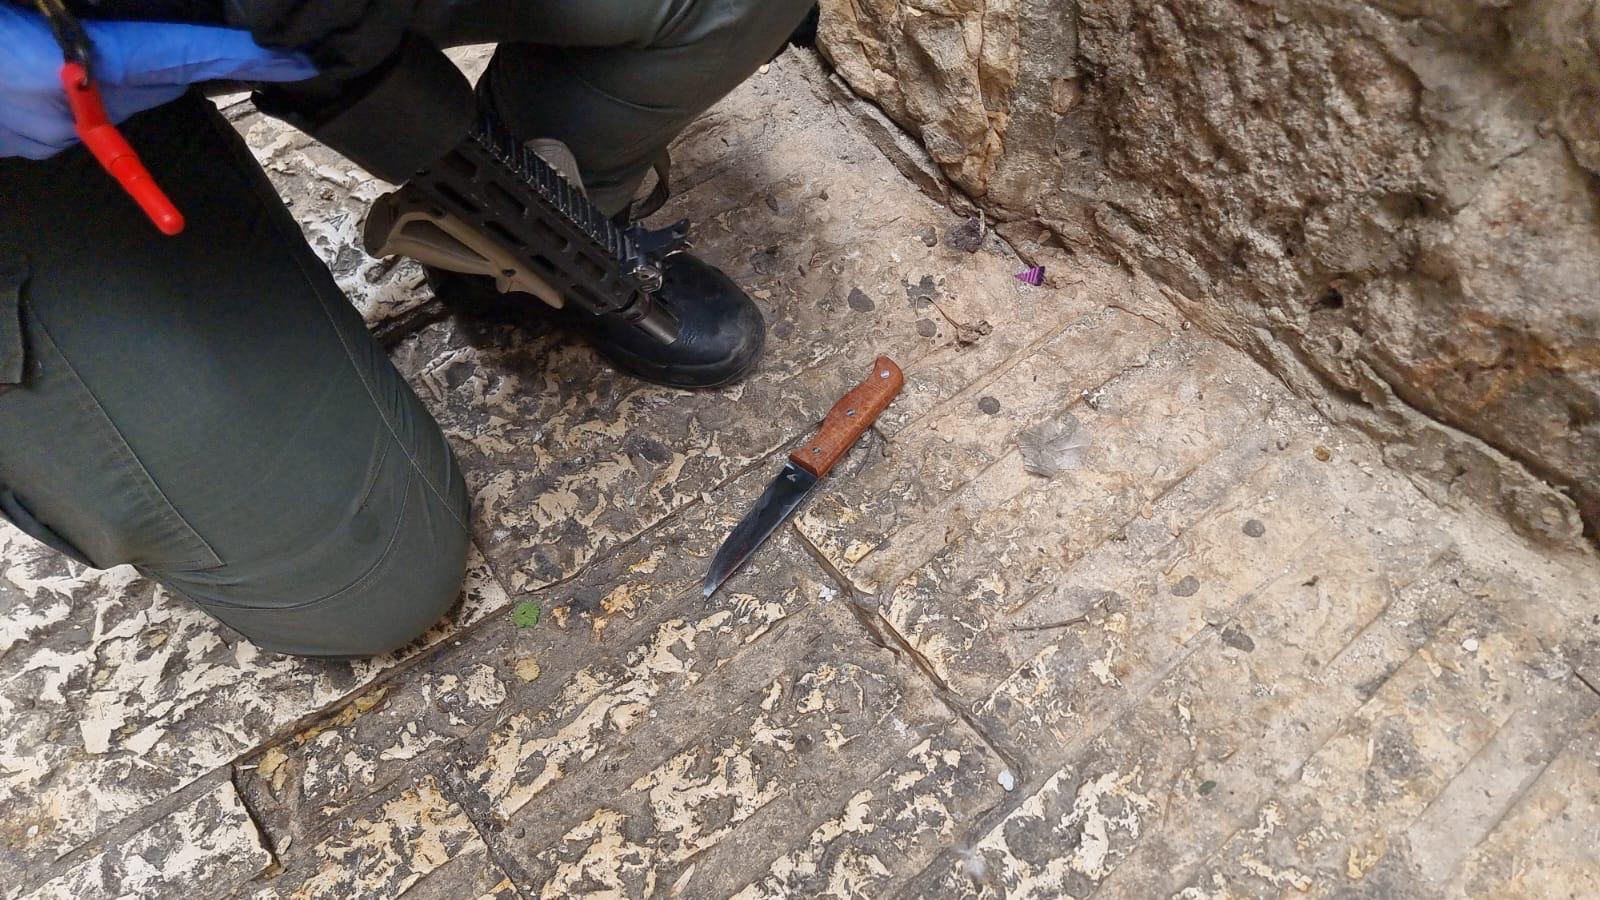 إصابة شرطي بجروح متوسط في اعتداء طعن إرهابي في البلدة القديمة من أورشليم القدس